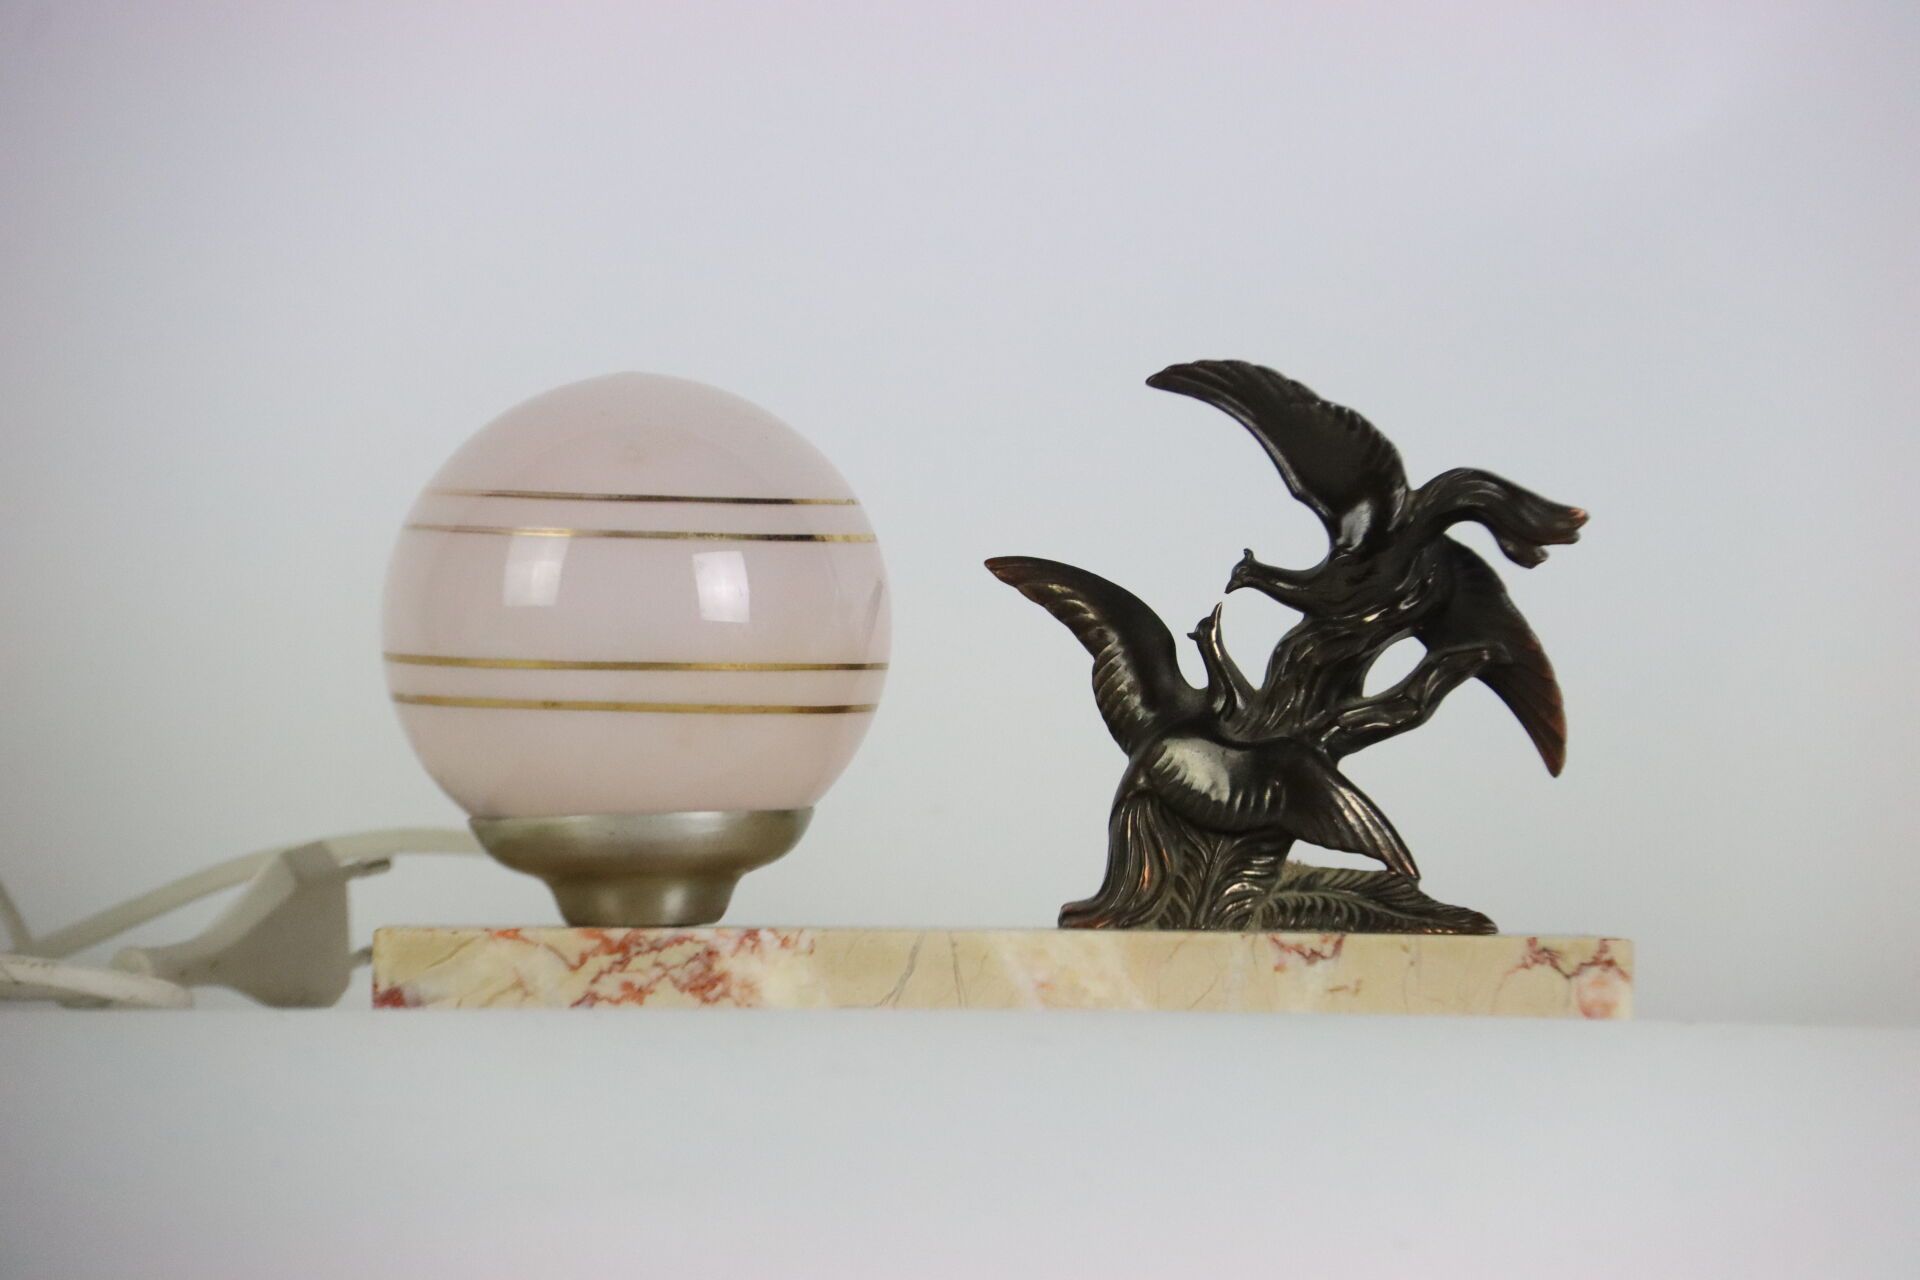 Null 球形灯，大理石底座上有金属鸟类雕塑。装饰艺术风格。尺寸为 14 x 24.5 厘米。